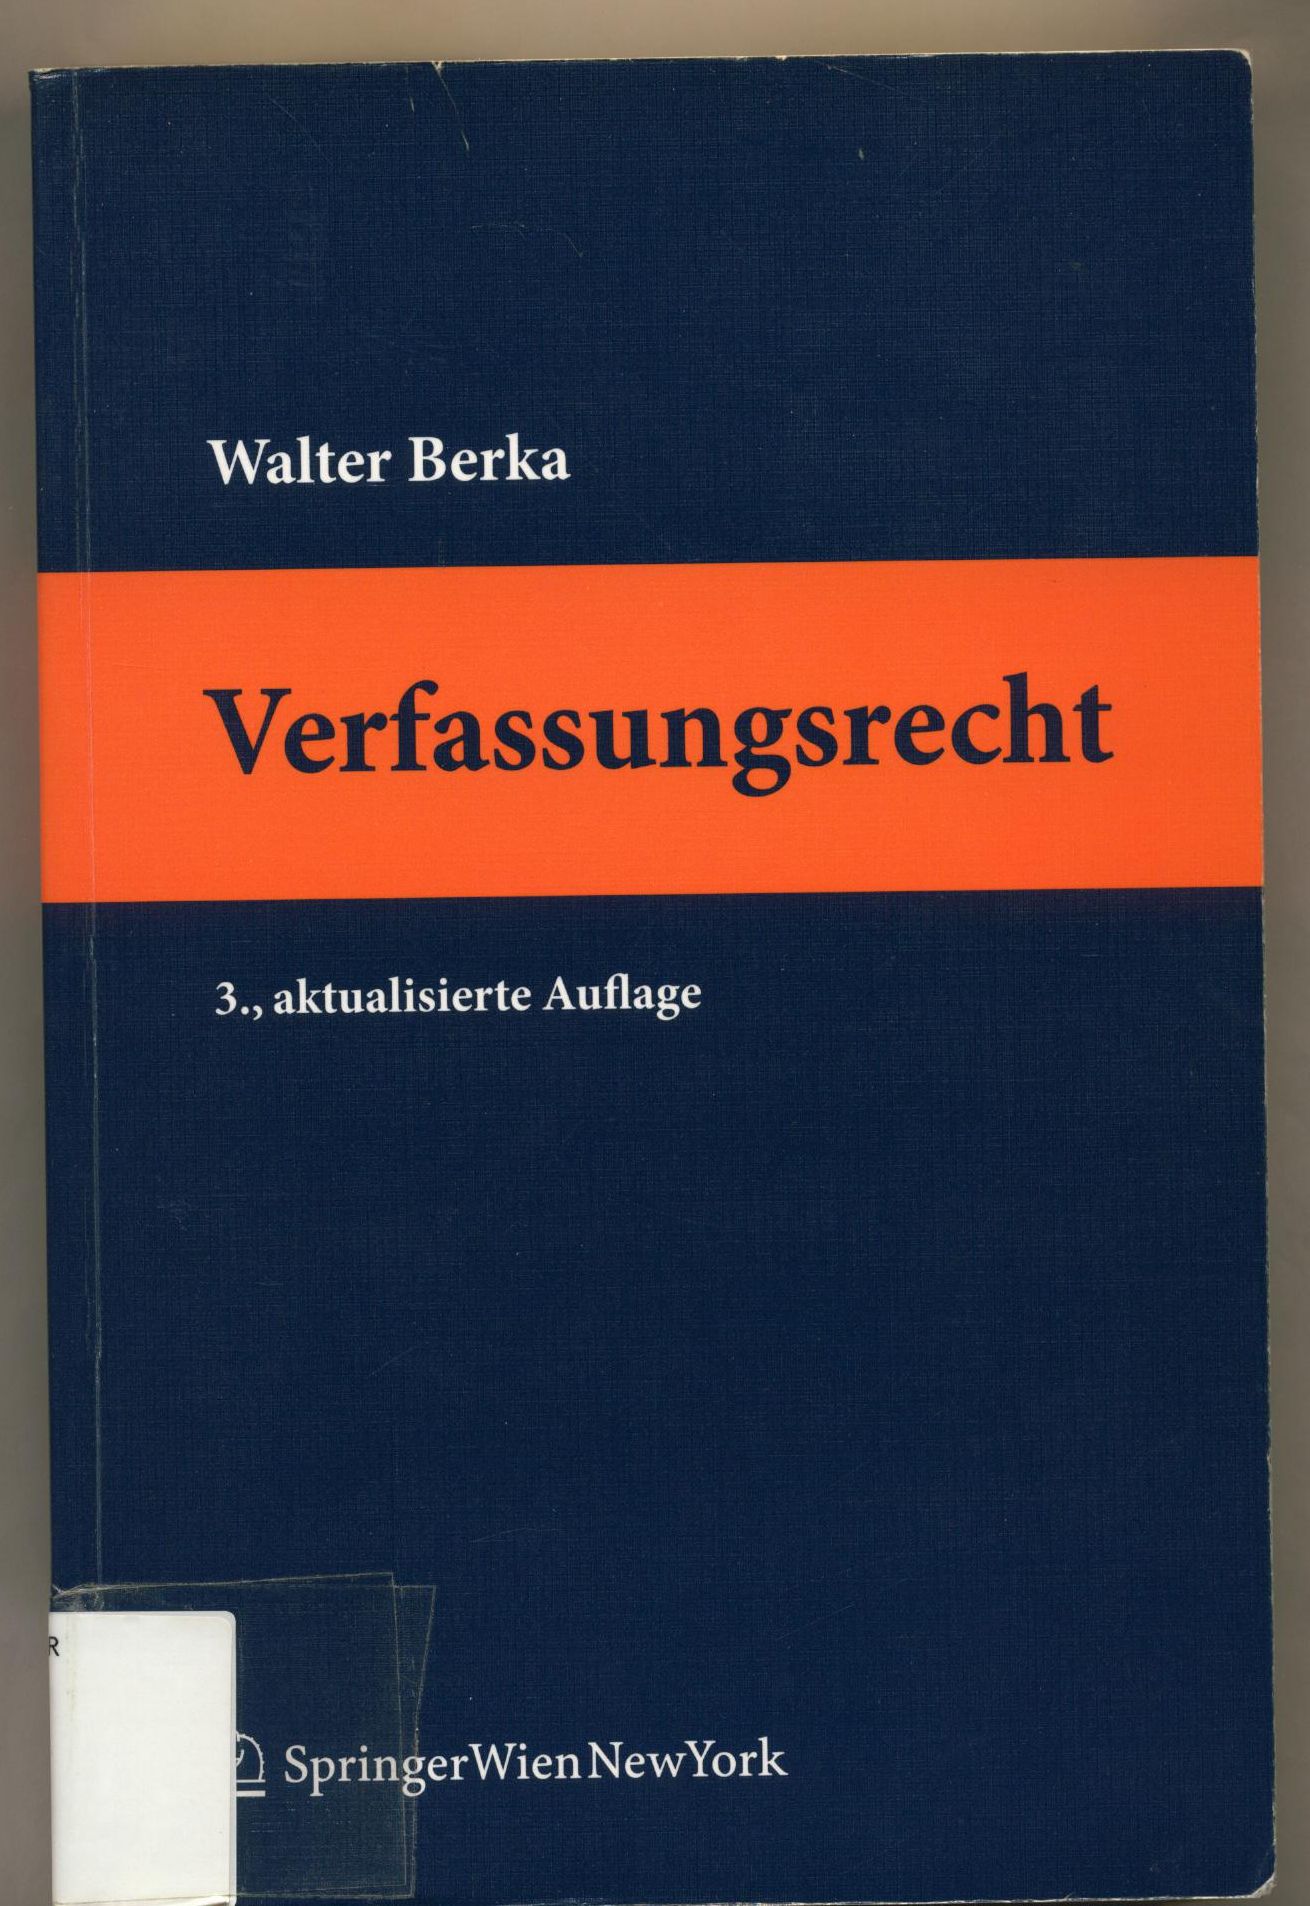 Verfassungsrecht Grundzüge des österreichischen Verfassungsrechts für das juristische Studium 3., aktualisierte Auflage - Berka, Walter